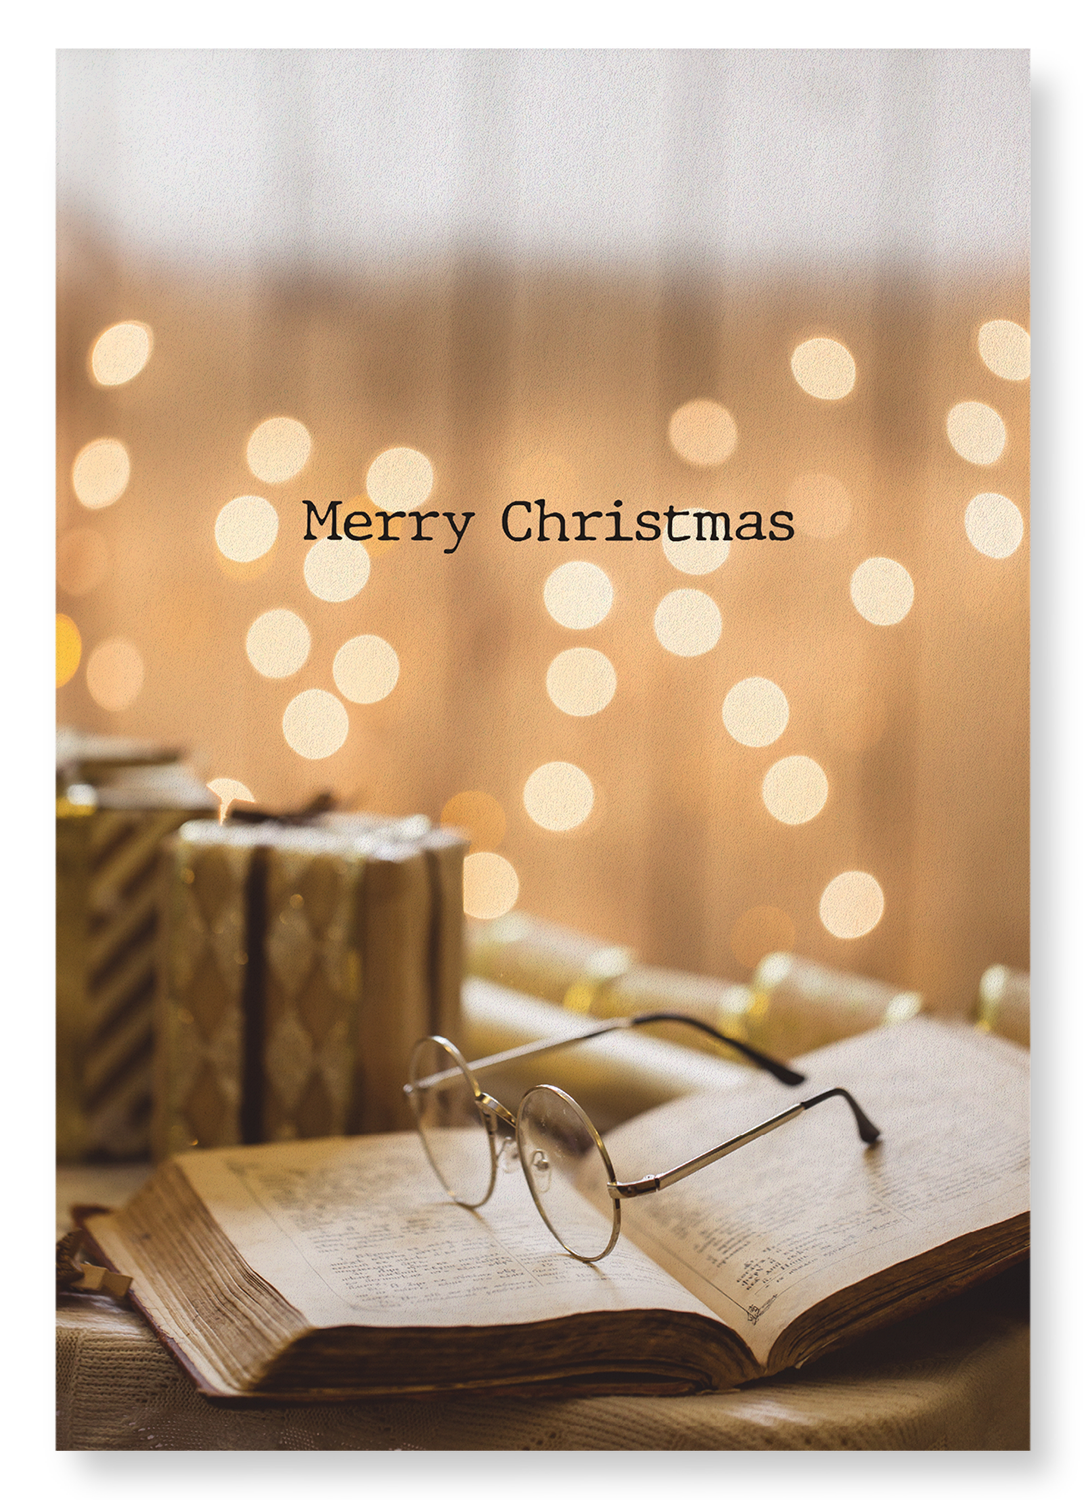 CHRISTMAS BOOK AND GLASSES: Photo Art print